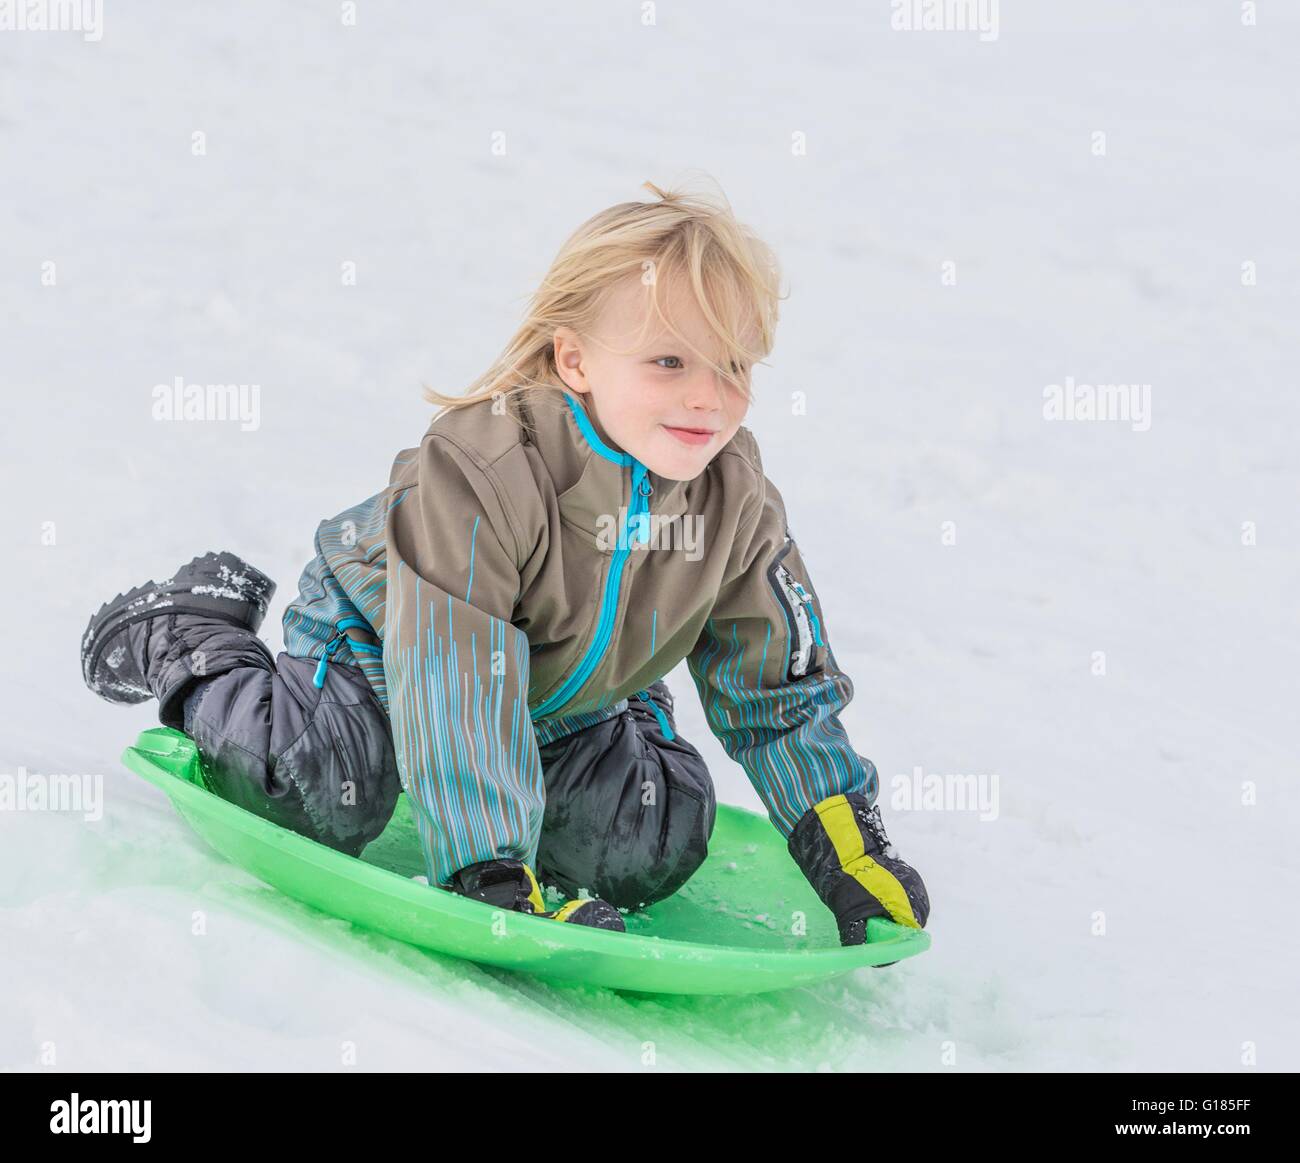 Boy playing on toboggan in snow Stock Photo